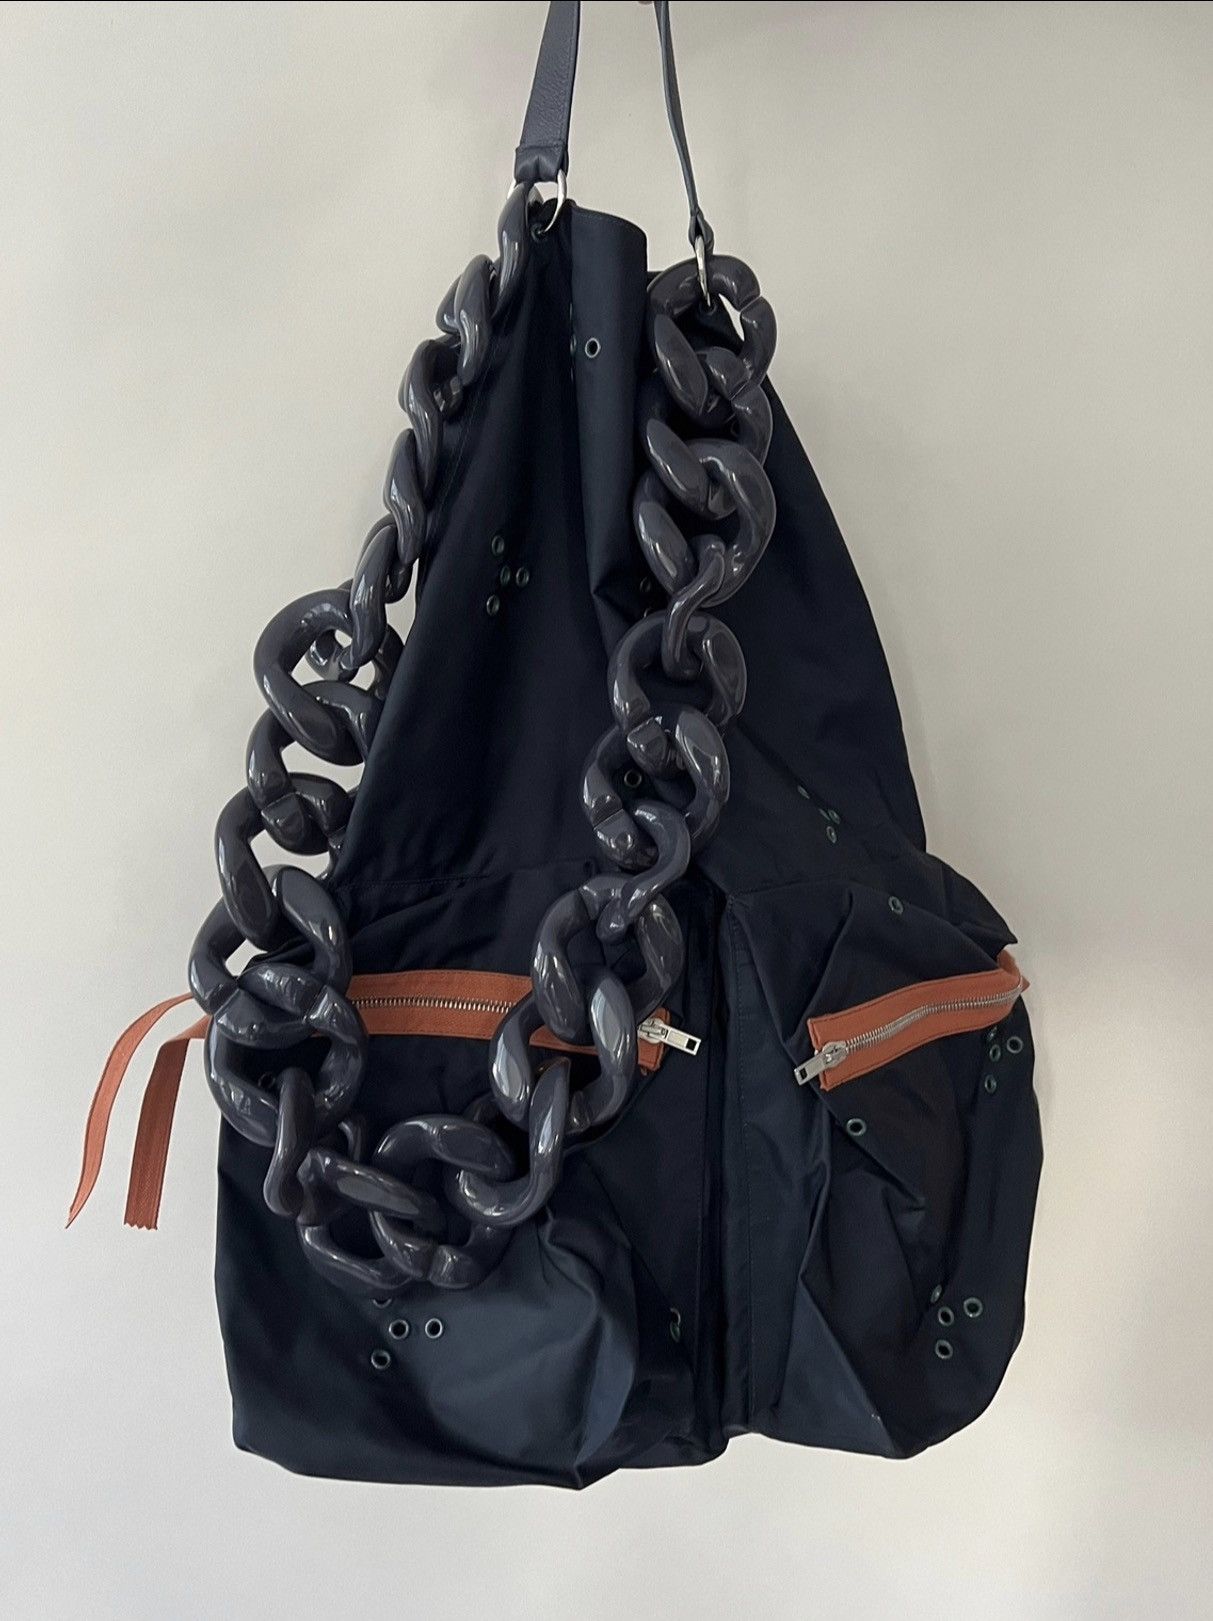 はこぽす対応商品】 RAF ライトSS16 SIMONS Bag Sack Chain バッグ 